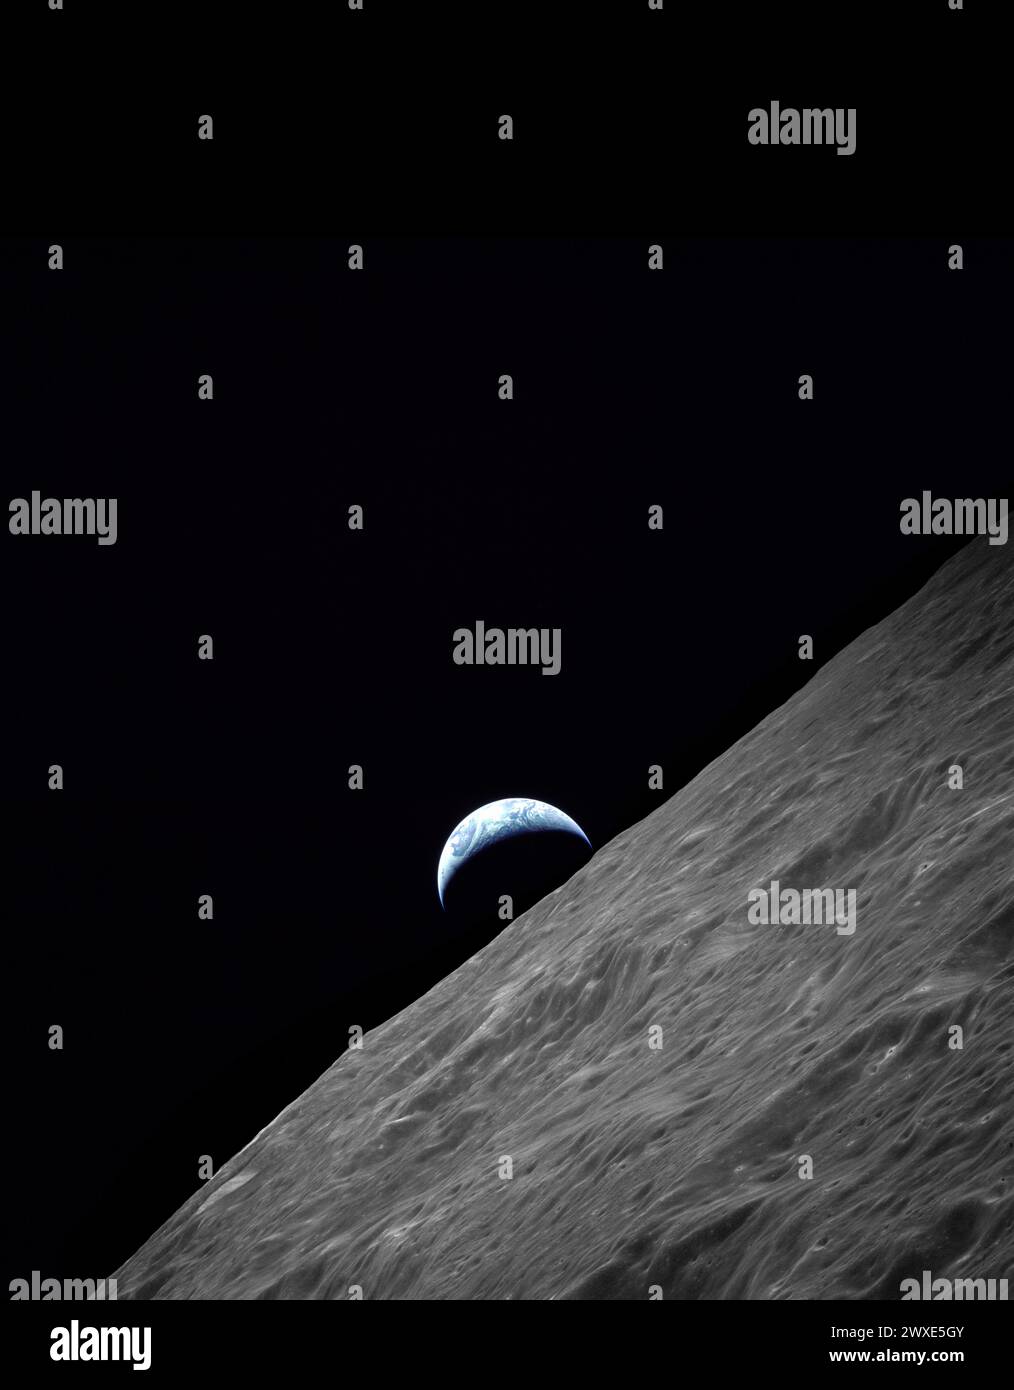 Lever de terre au-dessus de la Lune pris pendant le voyage d'Apollo 17 vers la Lune. Nasas dernière mission lunaire habitée. Vue du croissant de la Terre s'élevant au-dessus de l'horizon lunaire au-dessus du cratère du Ritz. Image prise lors de la mission Apollo 17 de 1972 sur Revolution 66. Le magazine de film original était étiqueté PP. Le type de film était SO-368 Color EKTACHROME MS CEX, Color Reversal, objectif 250mm., longitude 97,6 est, Azimut 263, altitude 113 km Une image NASA optimisée. Crédit : NASA image a ajouté un espace noir en haut de l'image. Le format original de l'image était carré. Banque D'Images